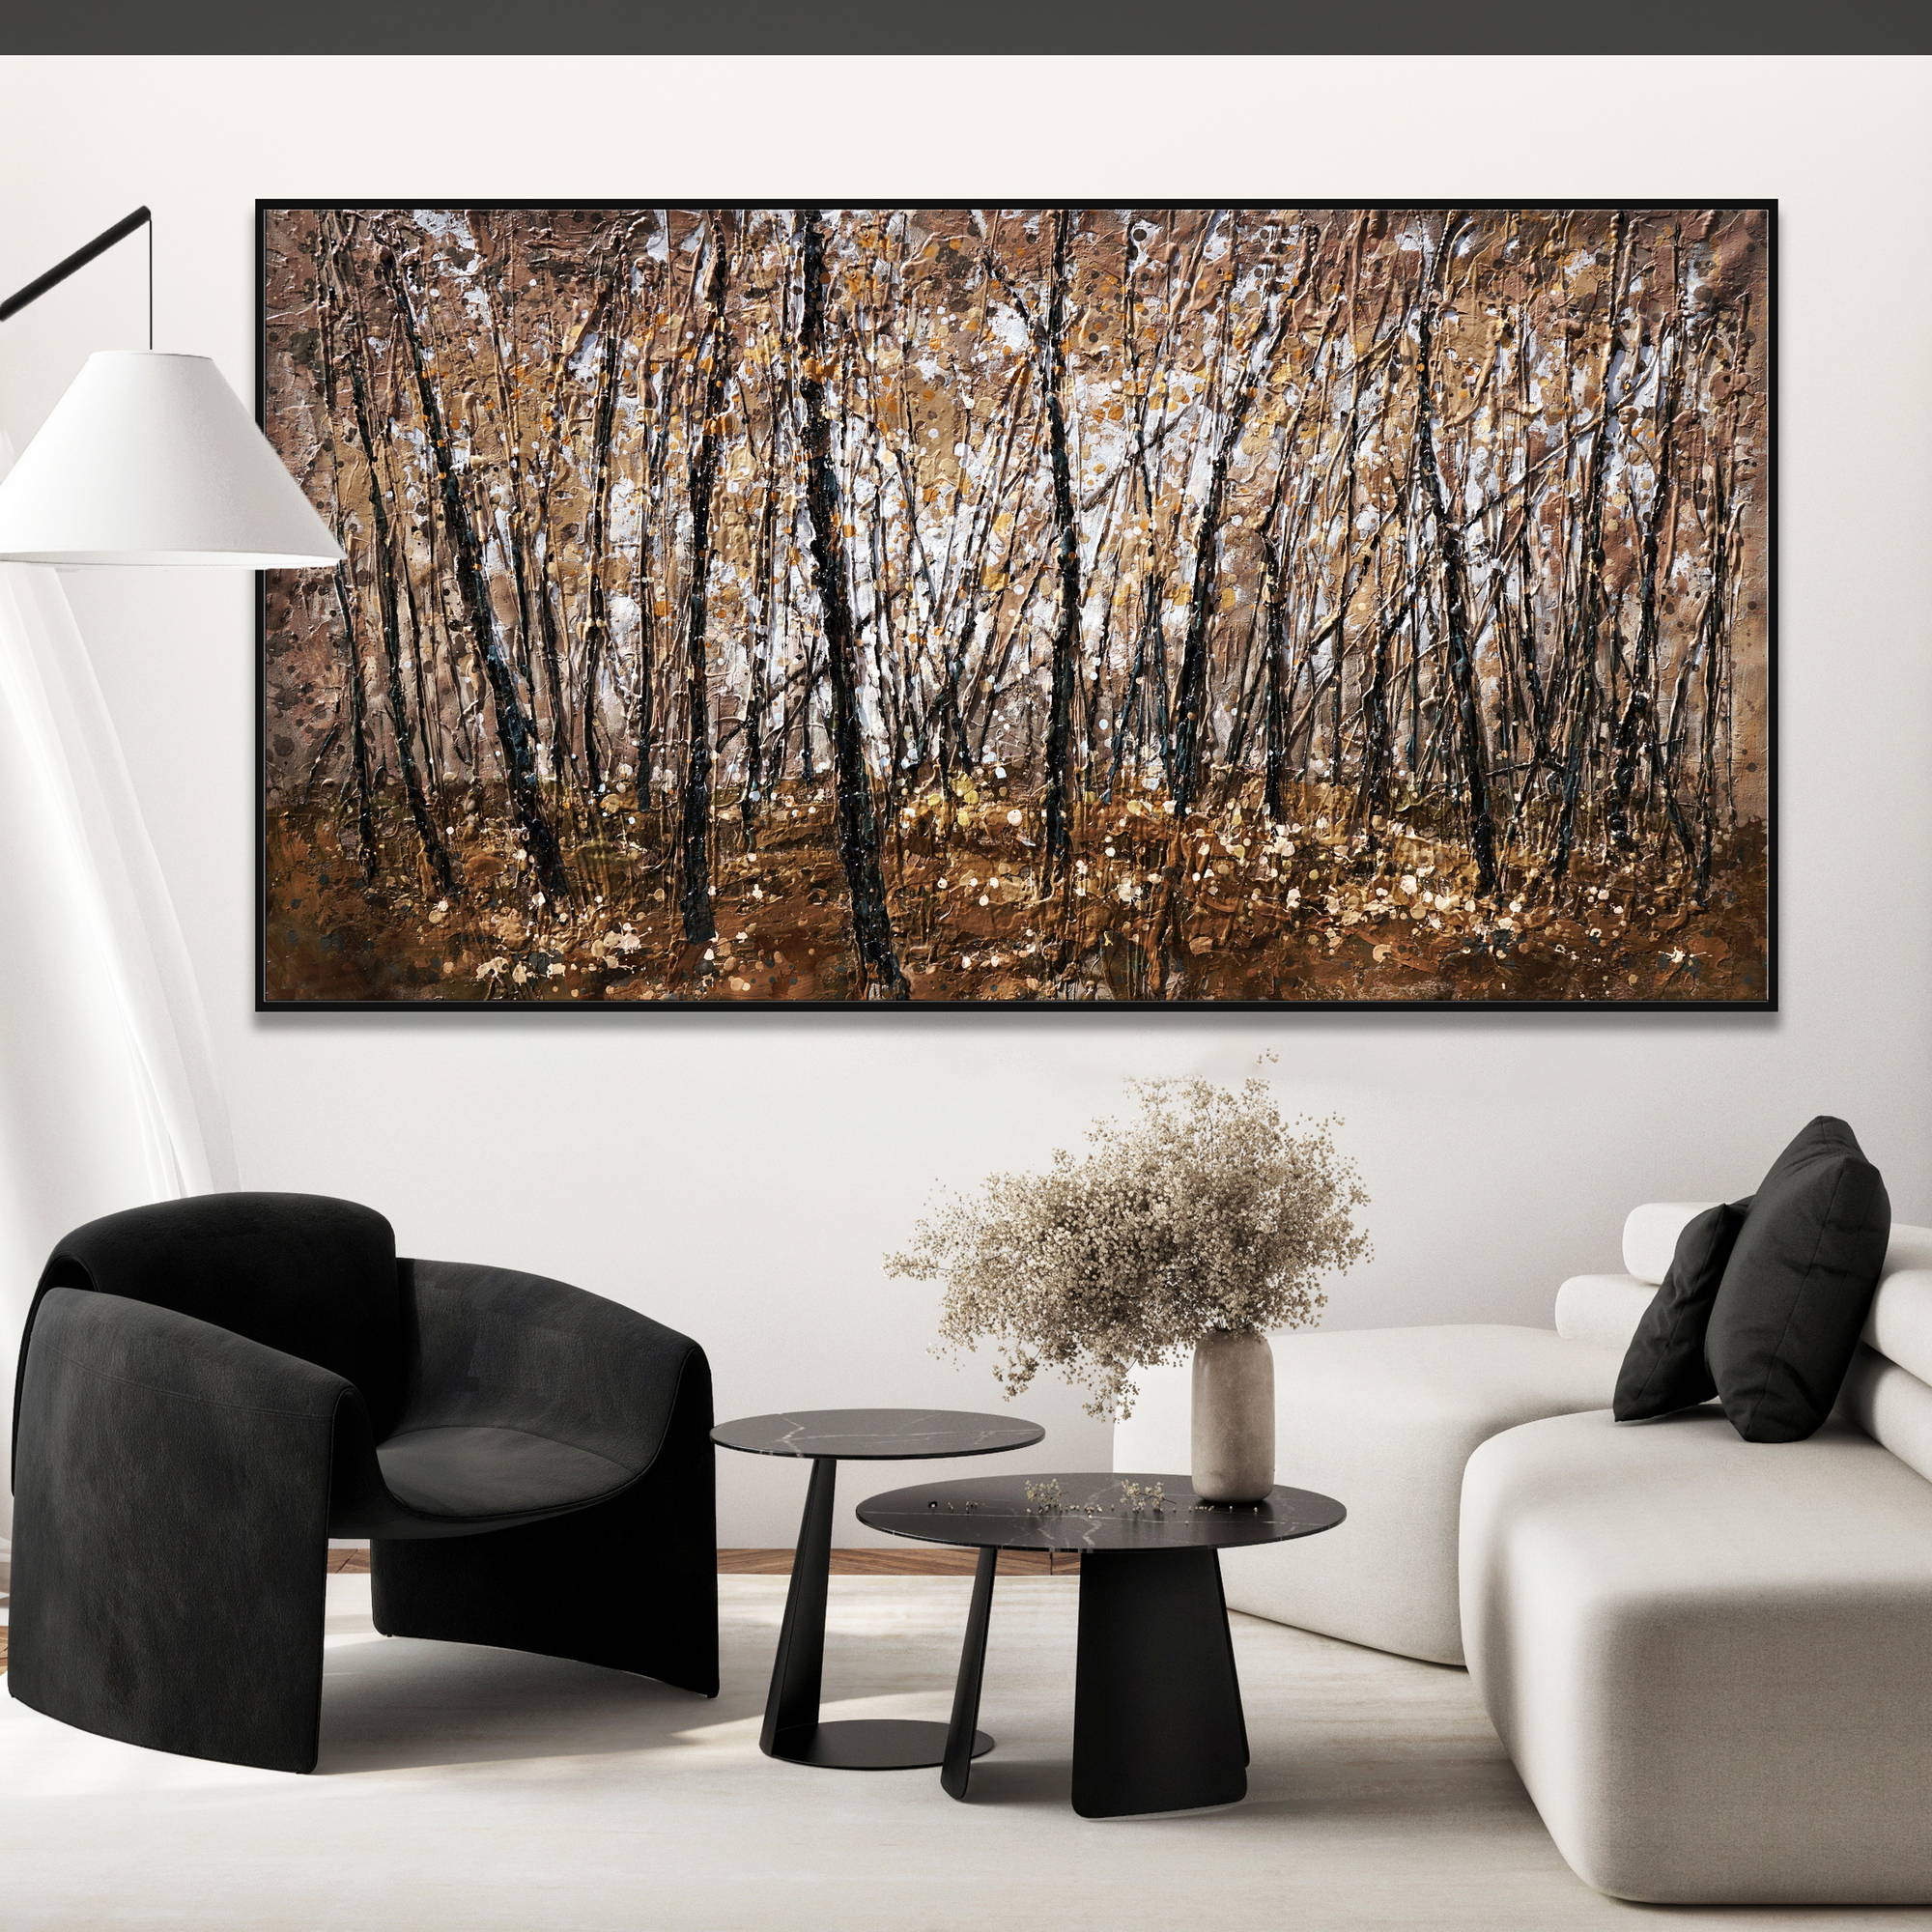 Quadro astratto di una foresta in autunno con alberi e foglie in tonalità marrone e ocra